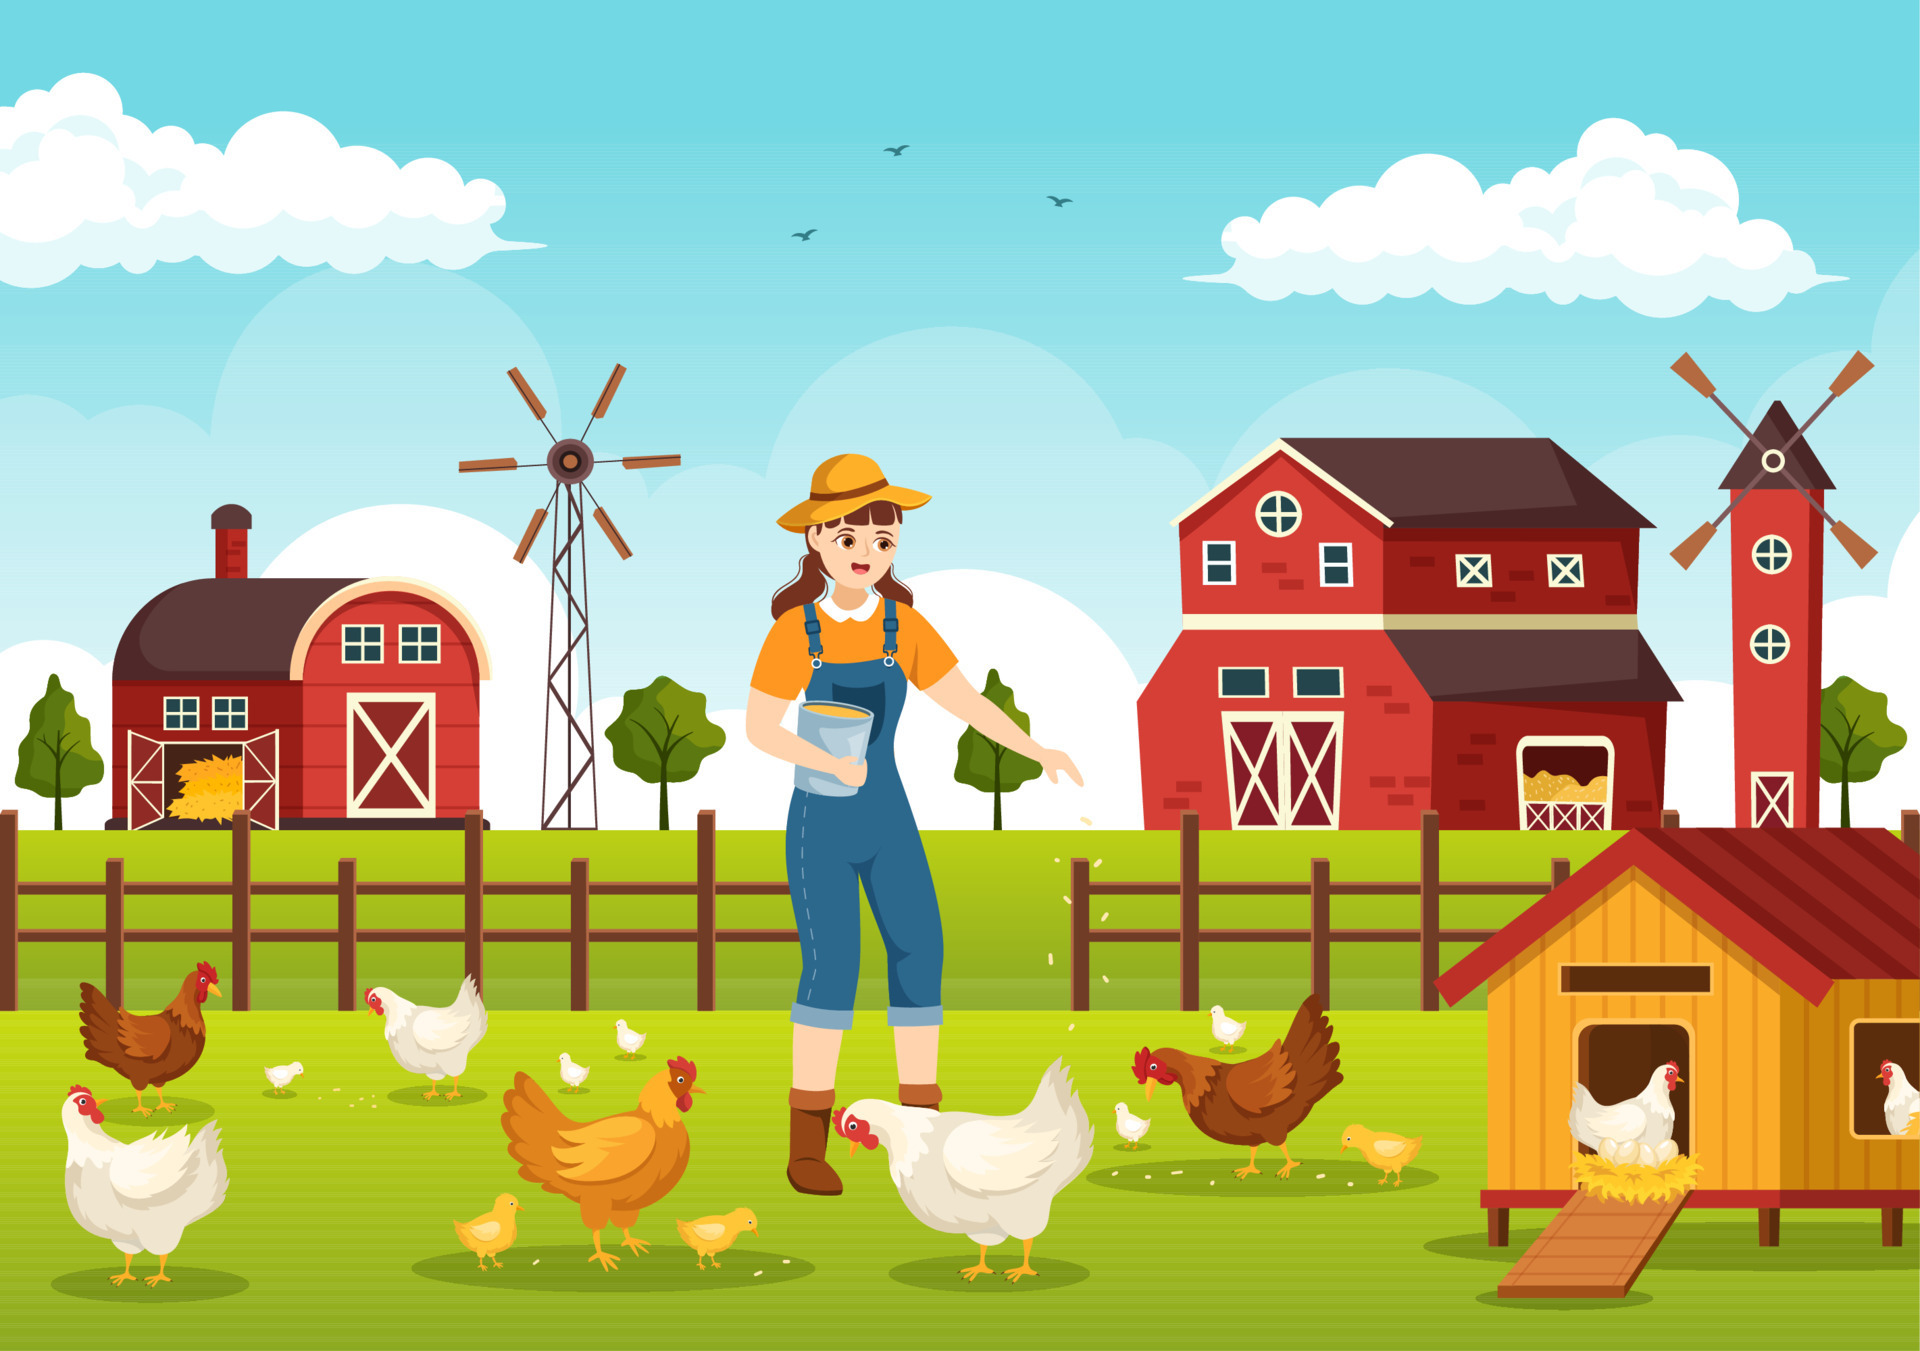 Desenho Animado De Galinha-mãe-galinha Ilustração Stock - Ilustração de  fazenda, vila: 234487646